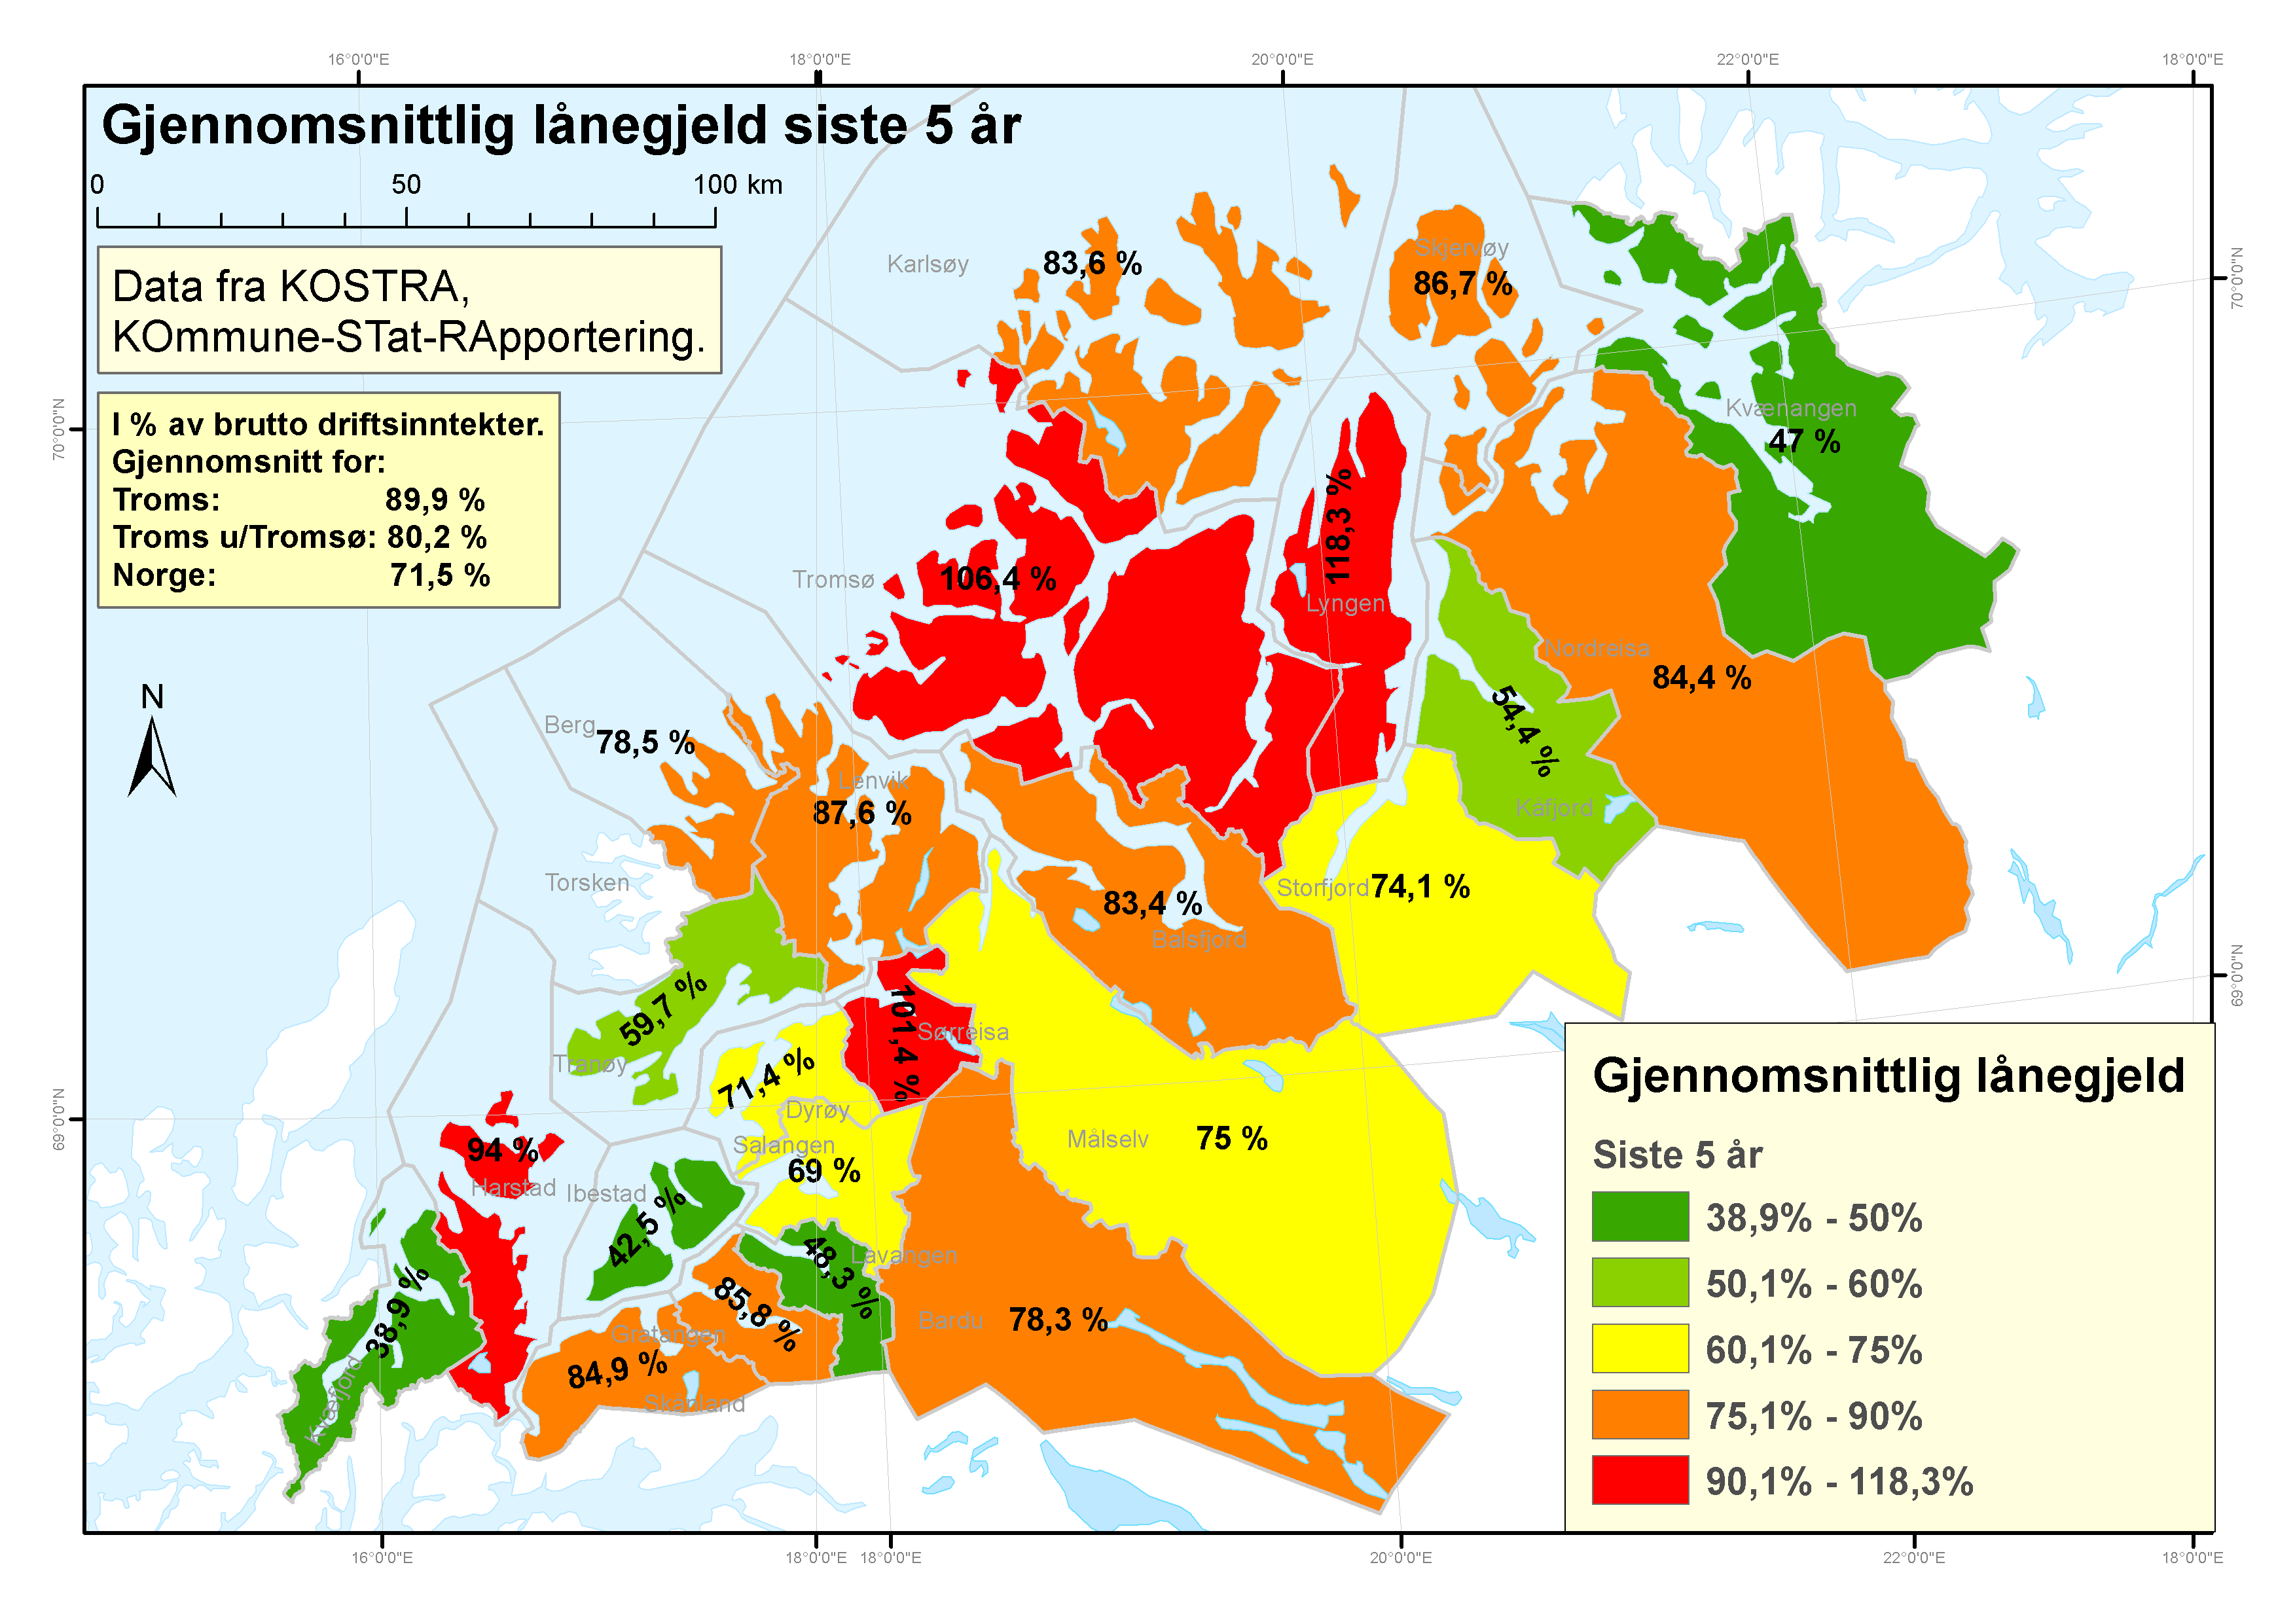 Kommunene Lyngen, Tromsø, Sørreisa og Harstad har hatt høyest gjeldsnivå i gjennomsnitt de siste 5 årene. Kommunene Kvæfjord, Ibestad, Kvænangen og Lavangen har lavest lånegjeld.